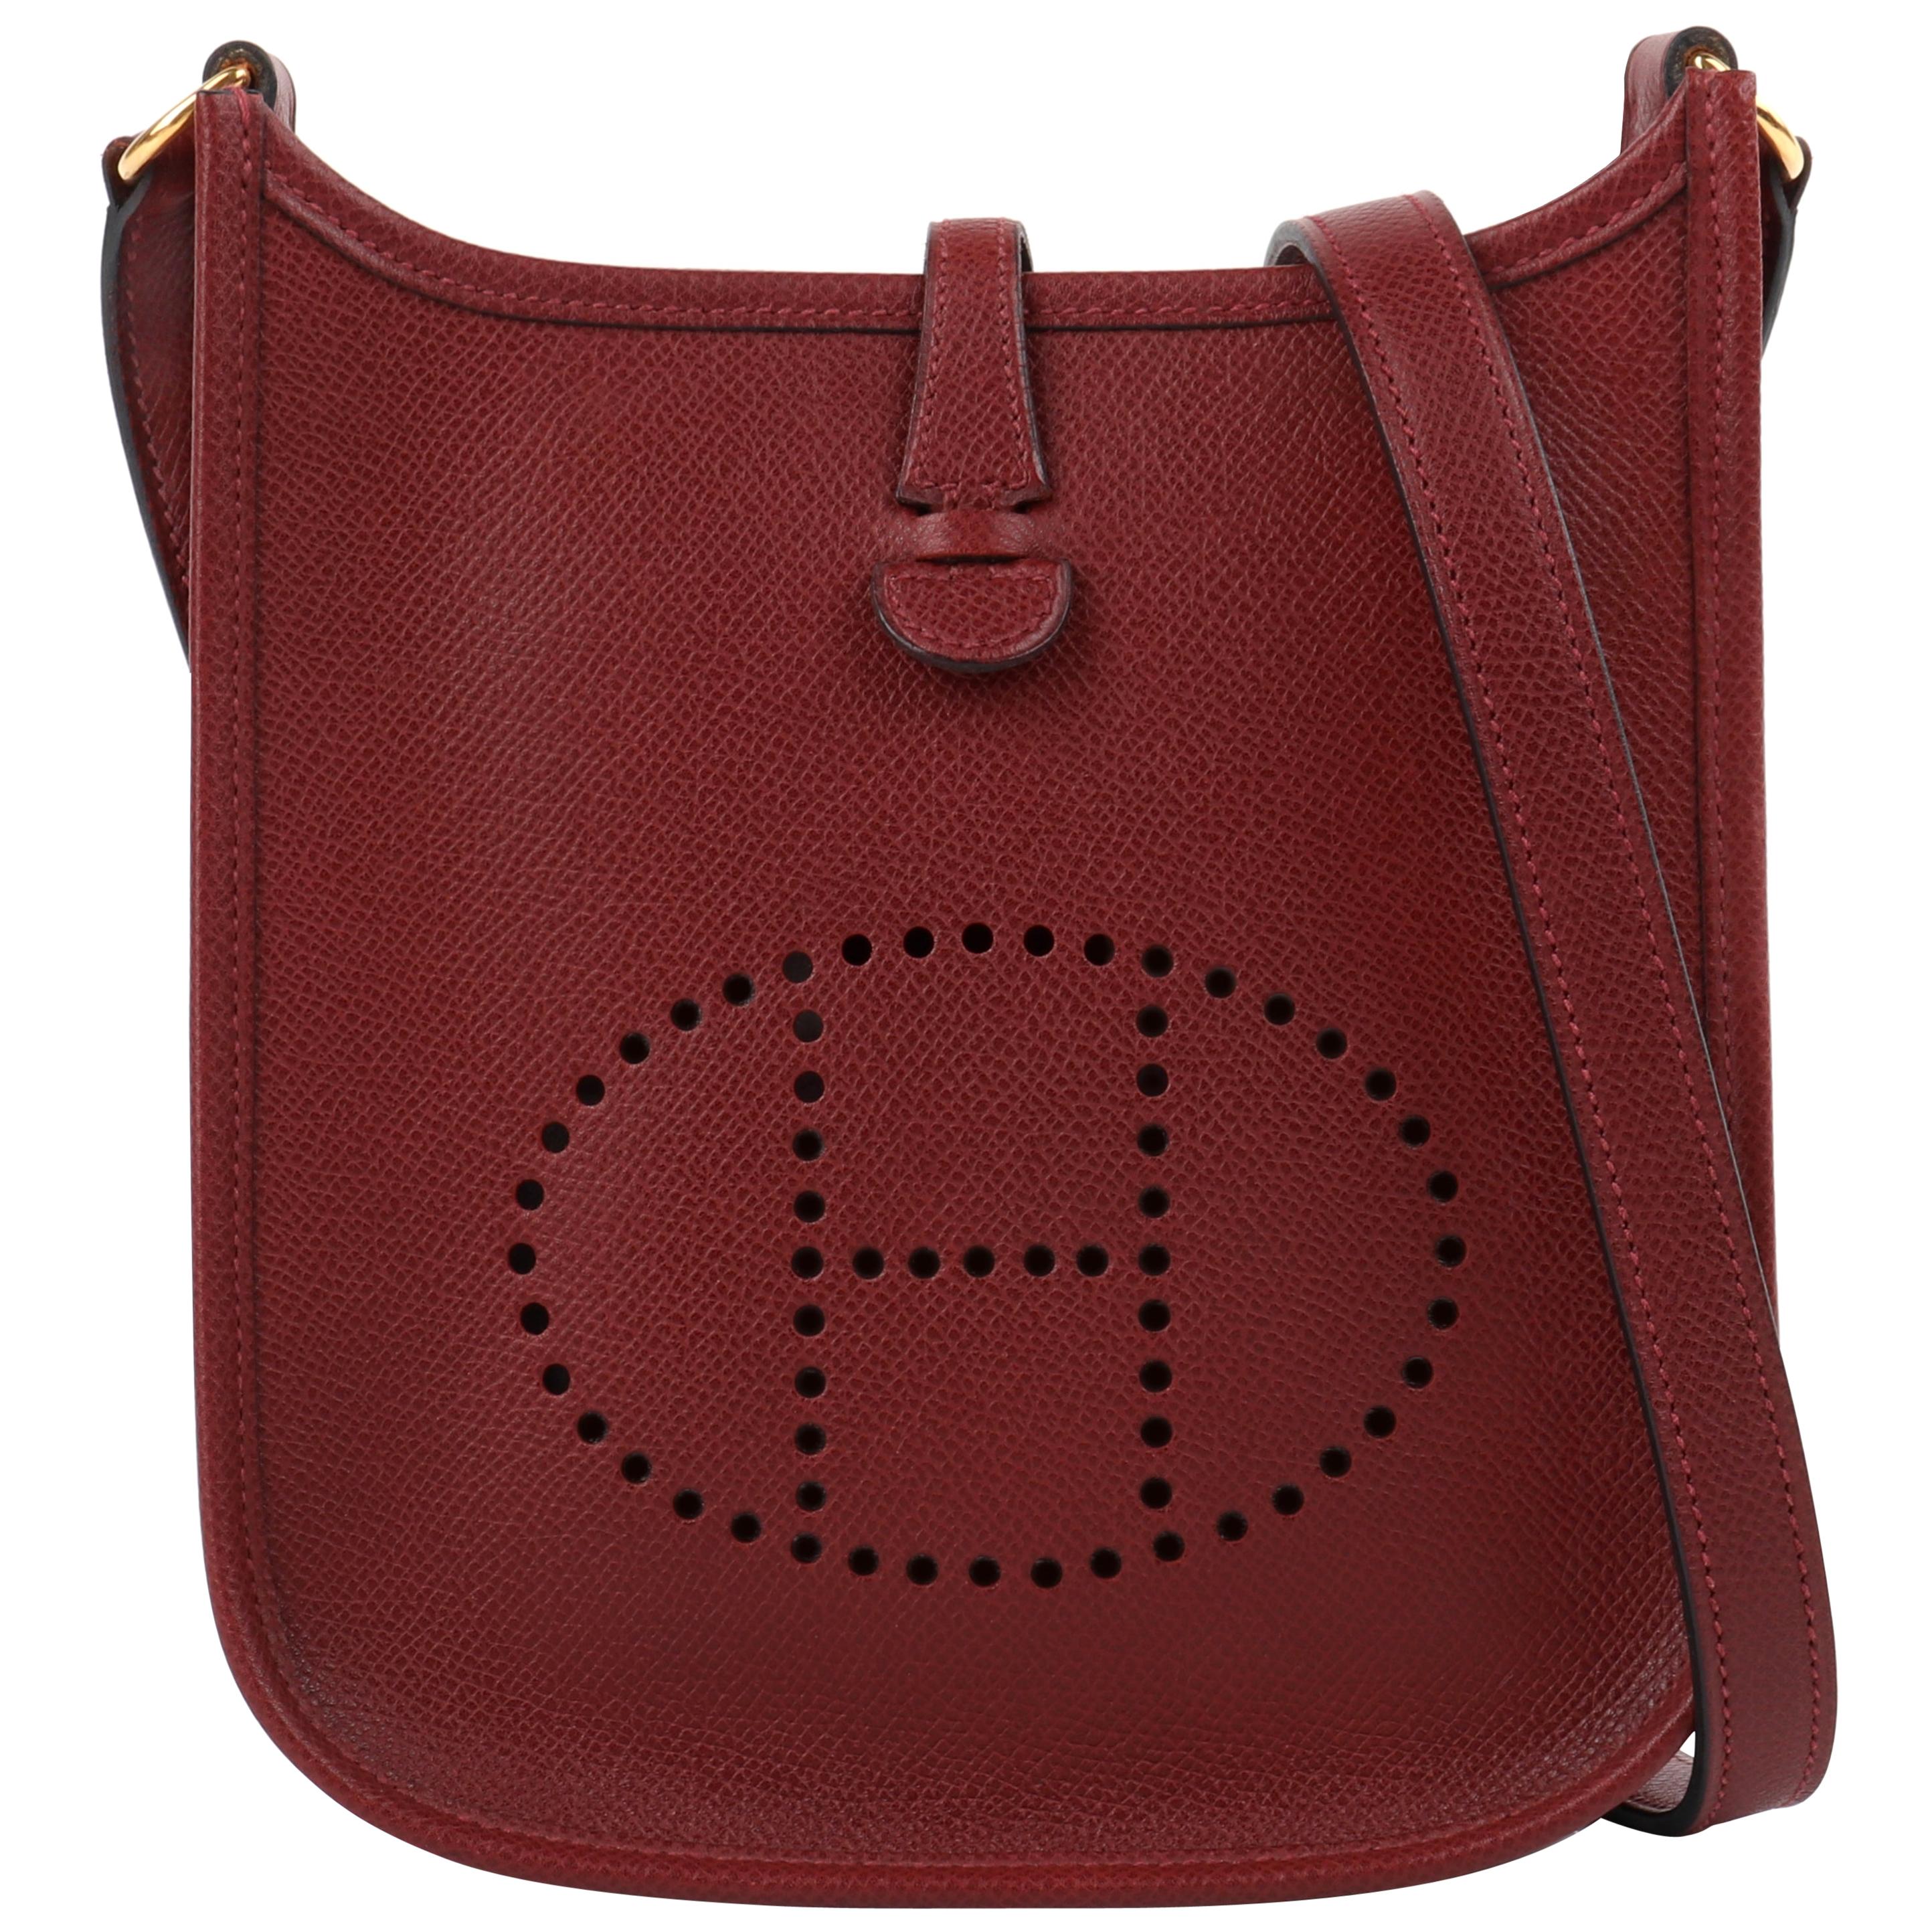 HERMES "Evelyne I" 2004 Rouge Clemence Leather Perforated Logo Shoulder Bag TPM